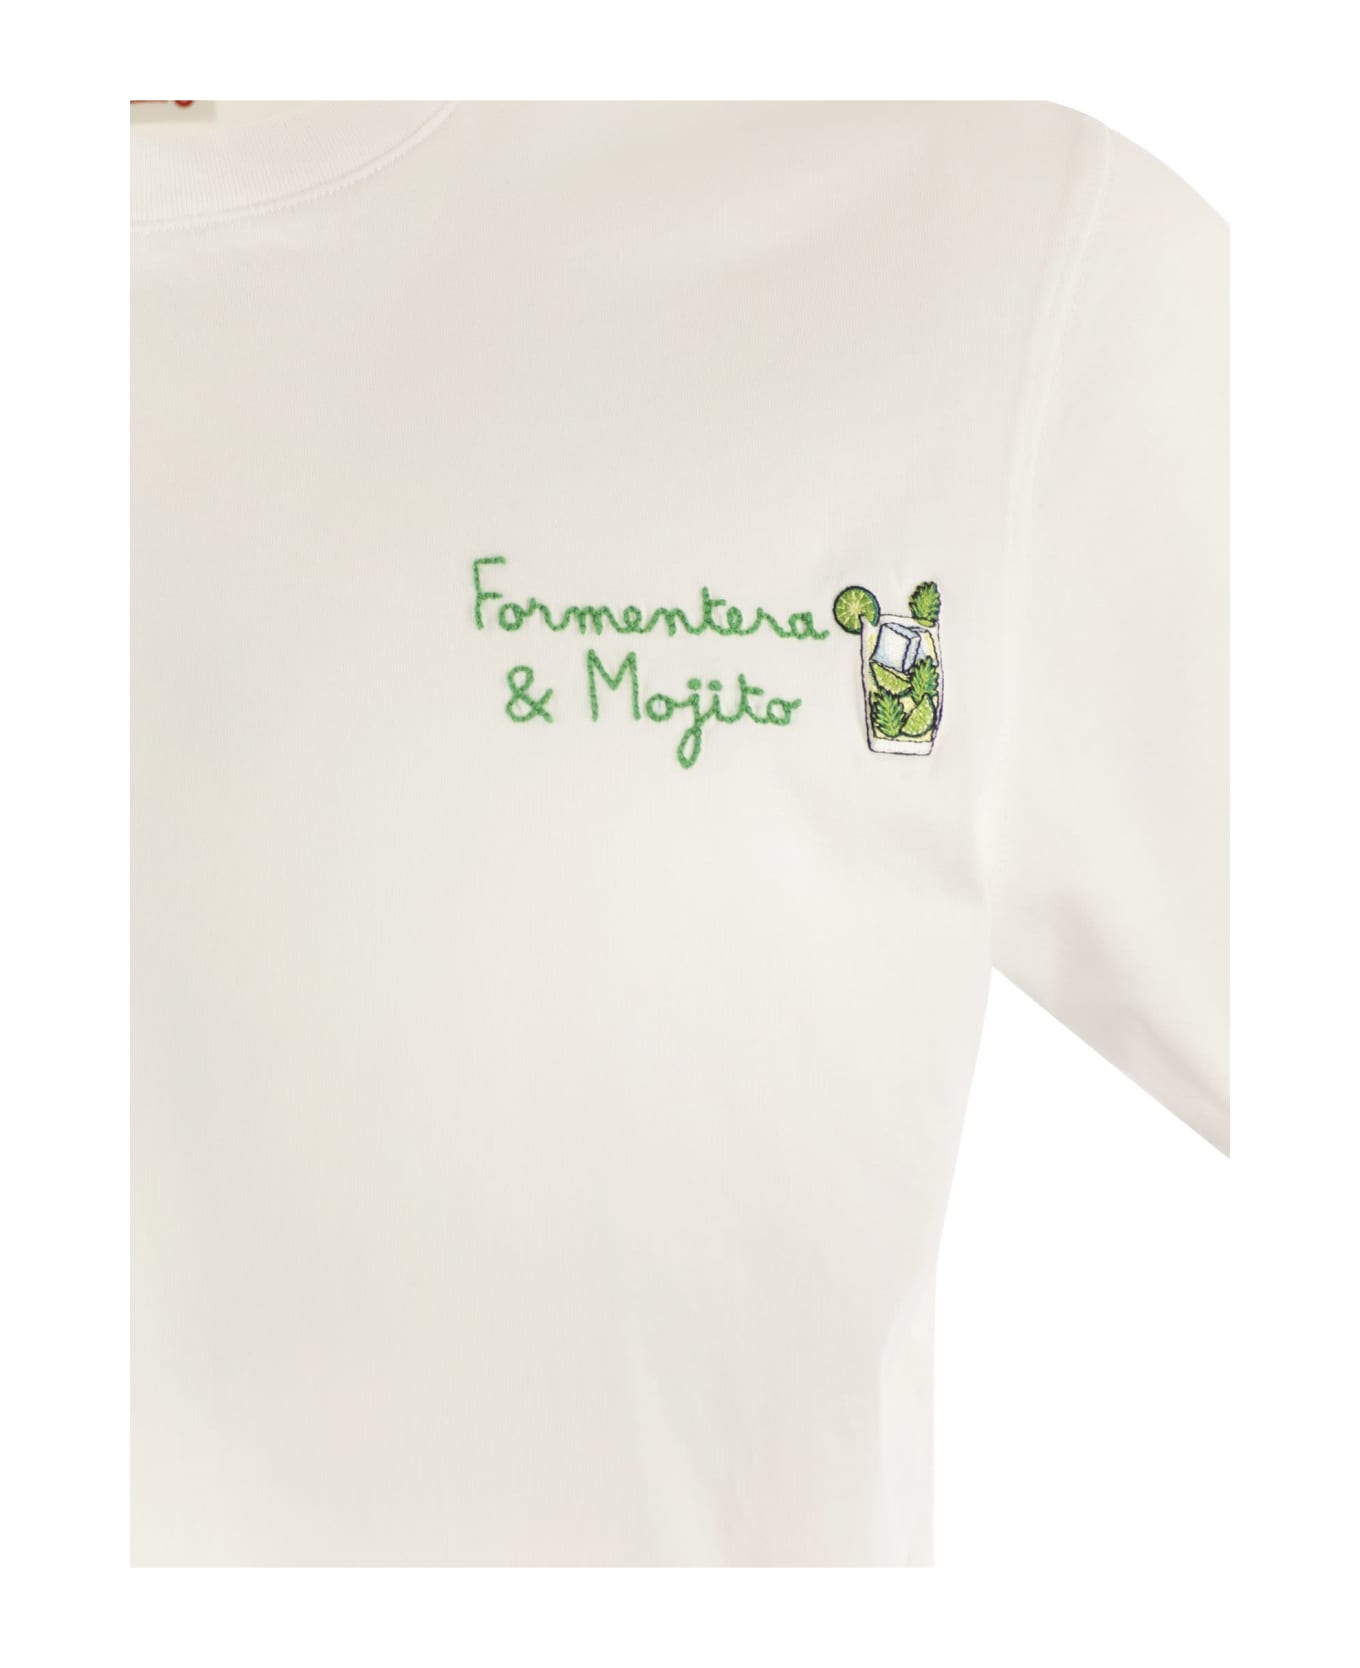 MC2 Saint Barth Portofino - T-shirt With Chest Embroidery - White